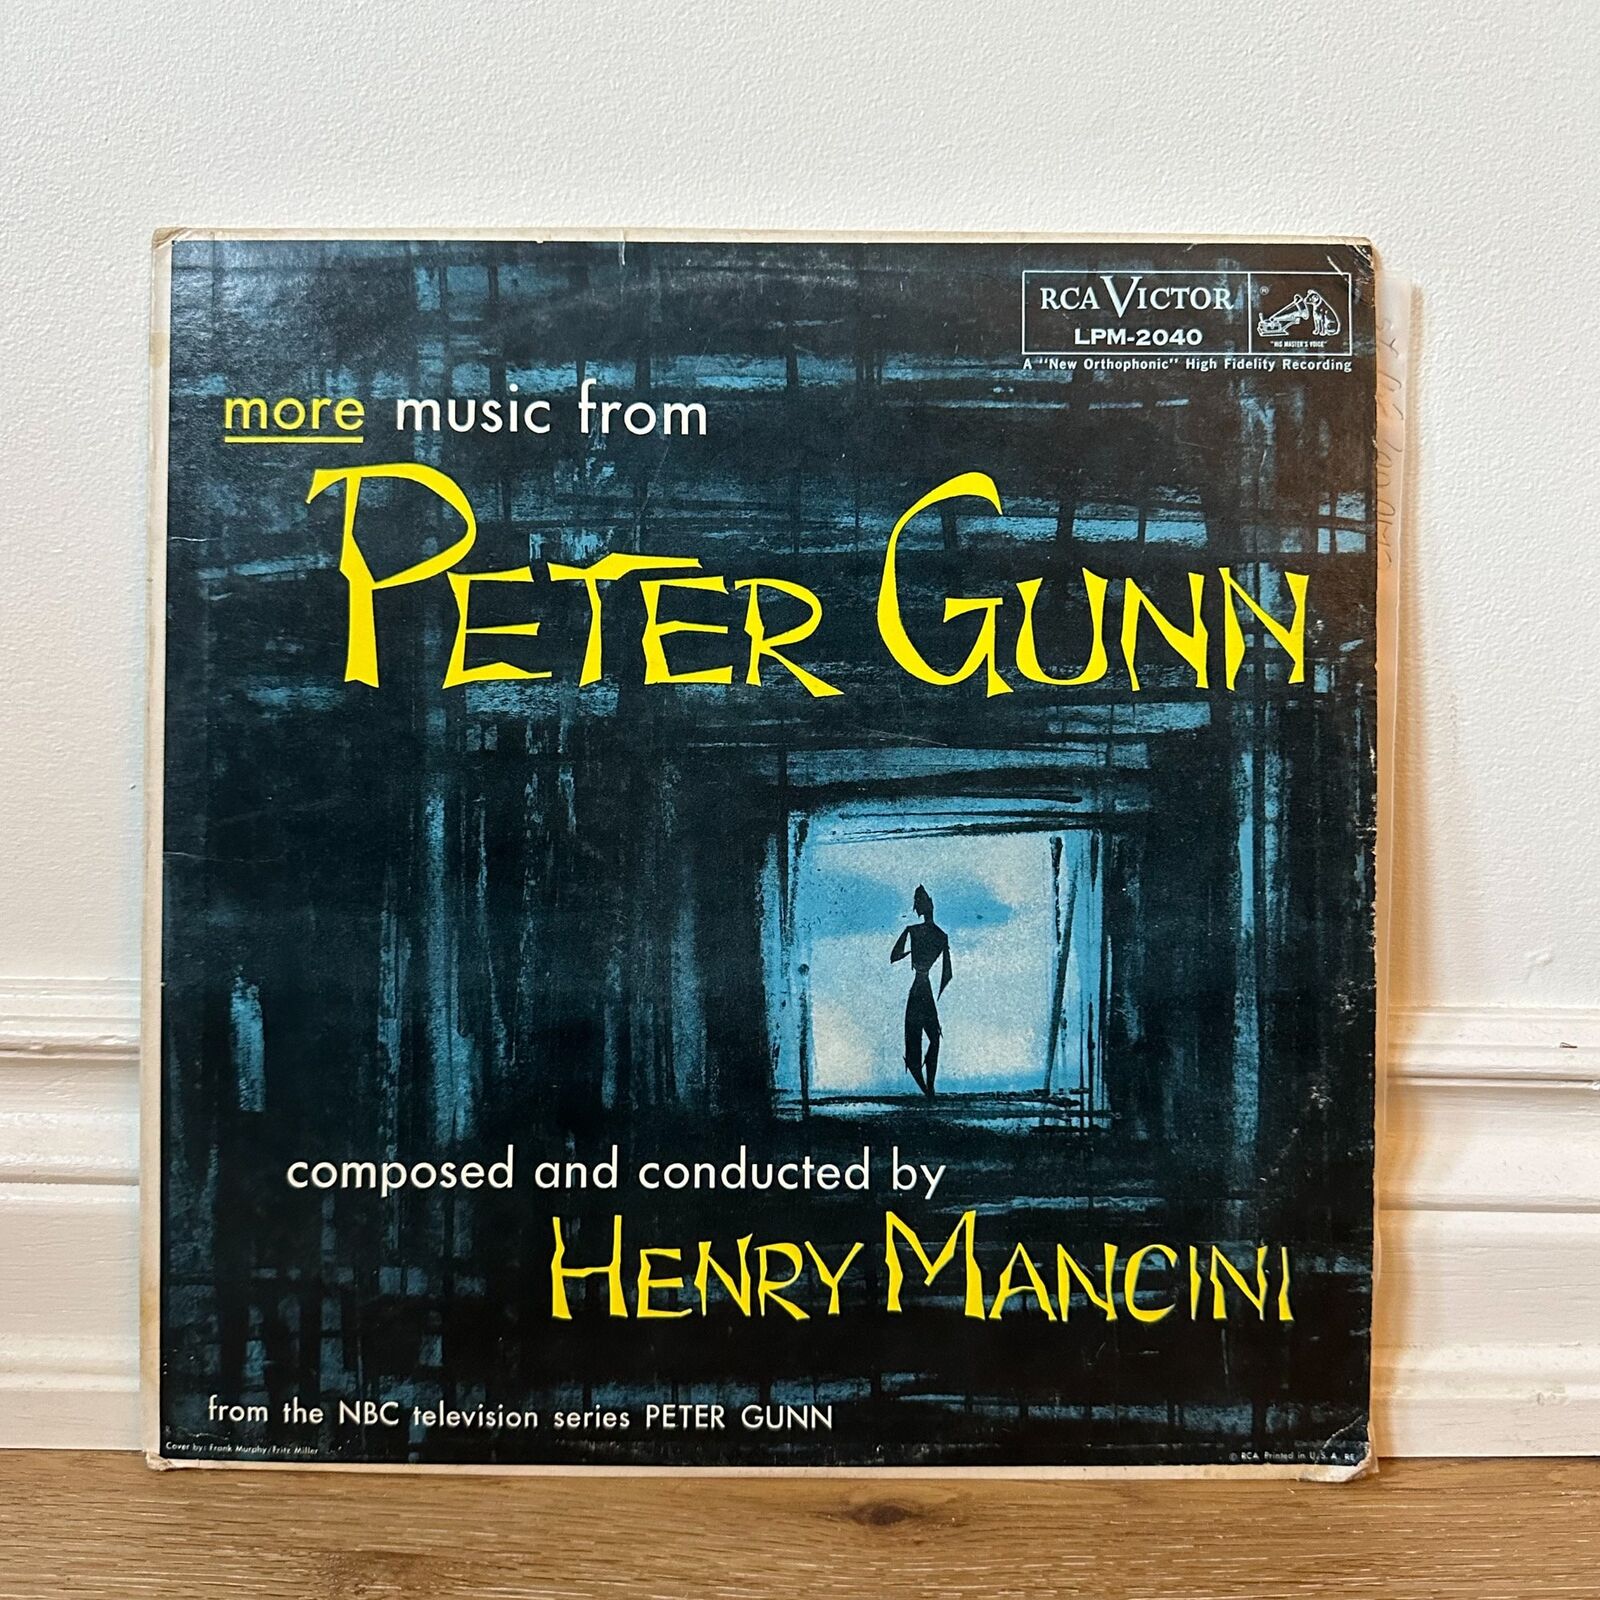 Henry Mancini - More Music From Peter Gunn - Vinyl LP Record - 1959